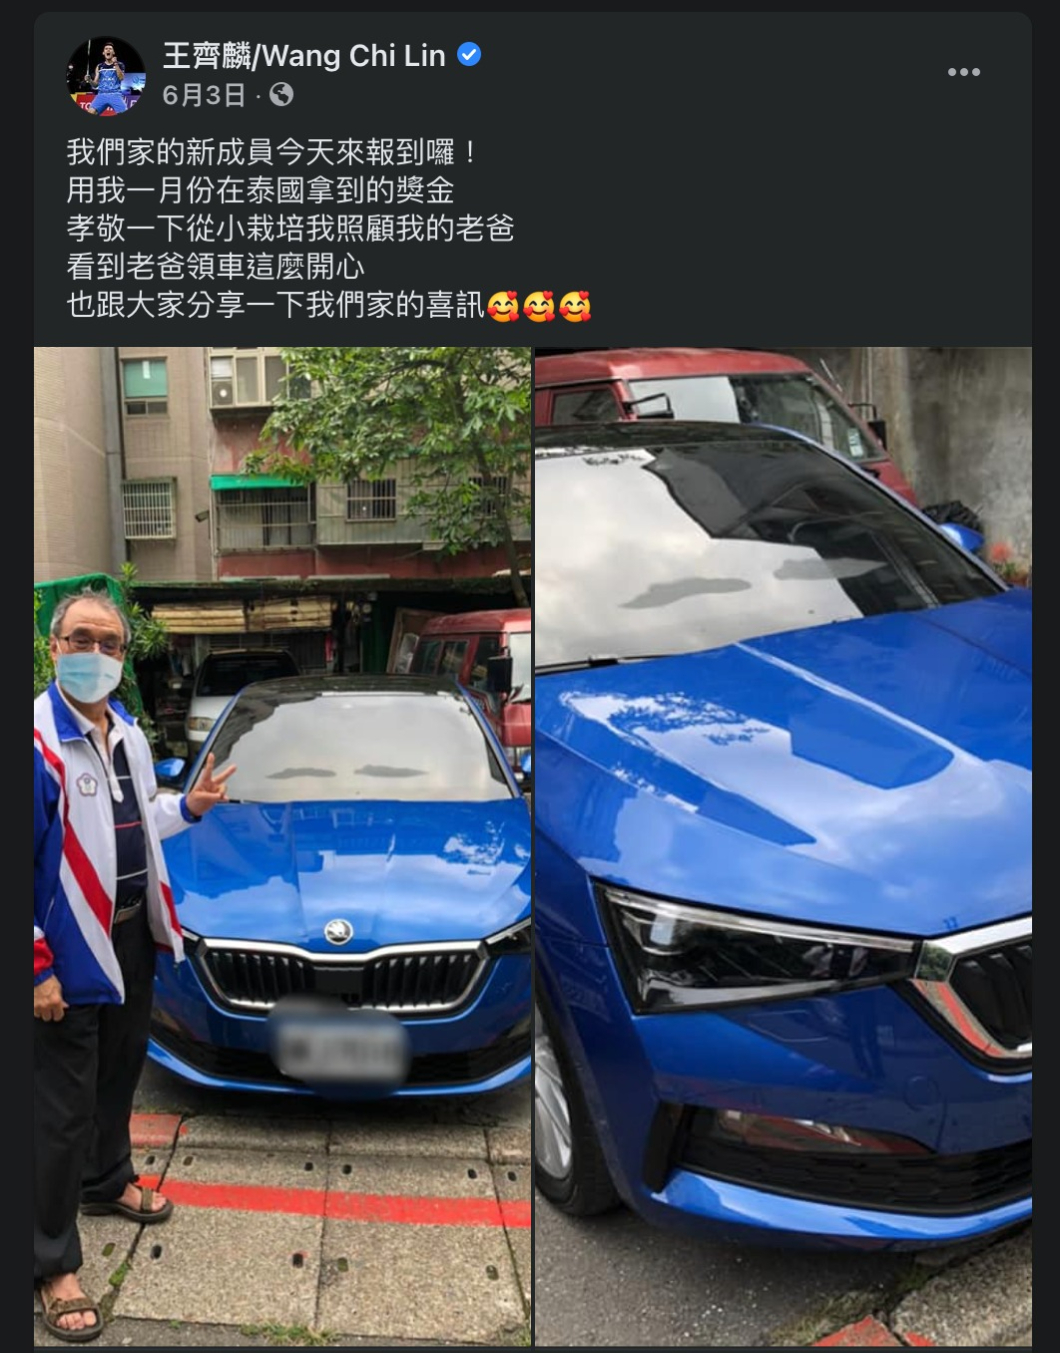 王齊麟於6月時分享家中的新成員，也就是用泰國羽球公開賽冠軍獎金贈送給爸爸的新車。(圖片來源/ 王齊麟臉書粉絲頁)